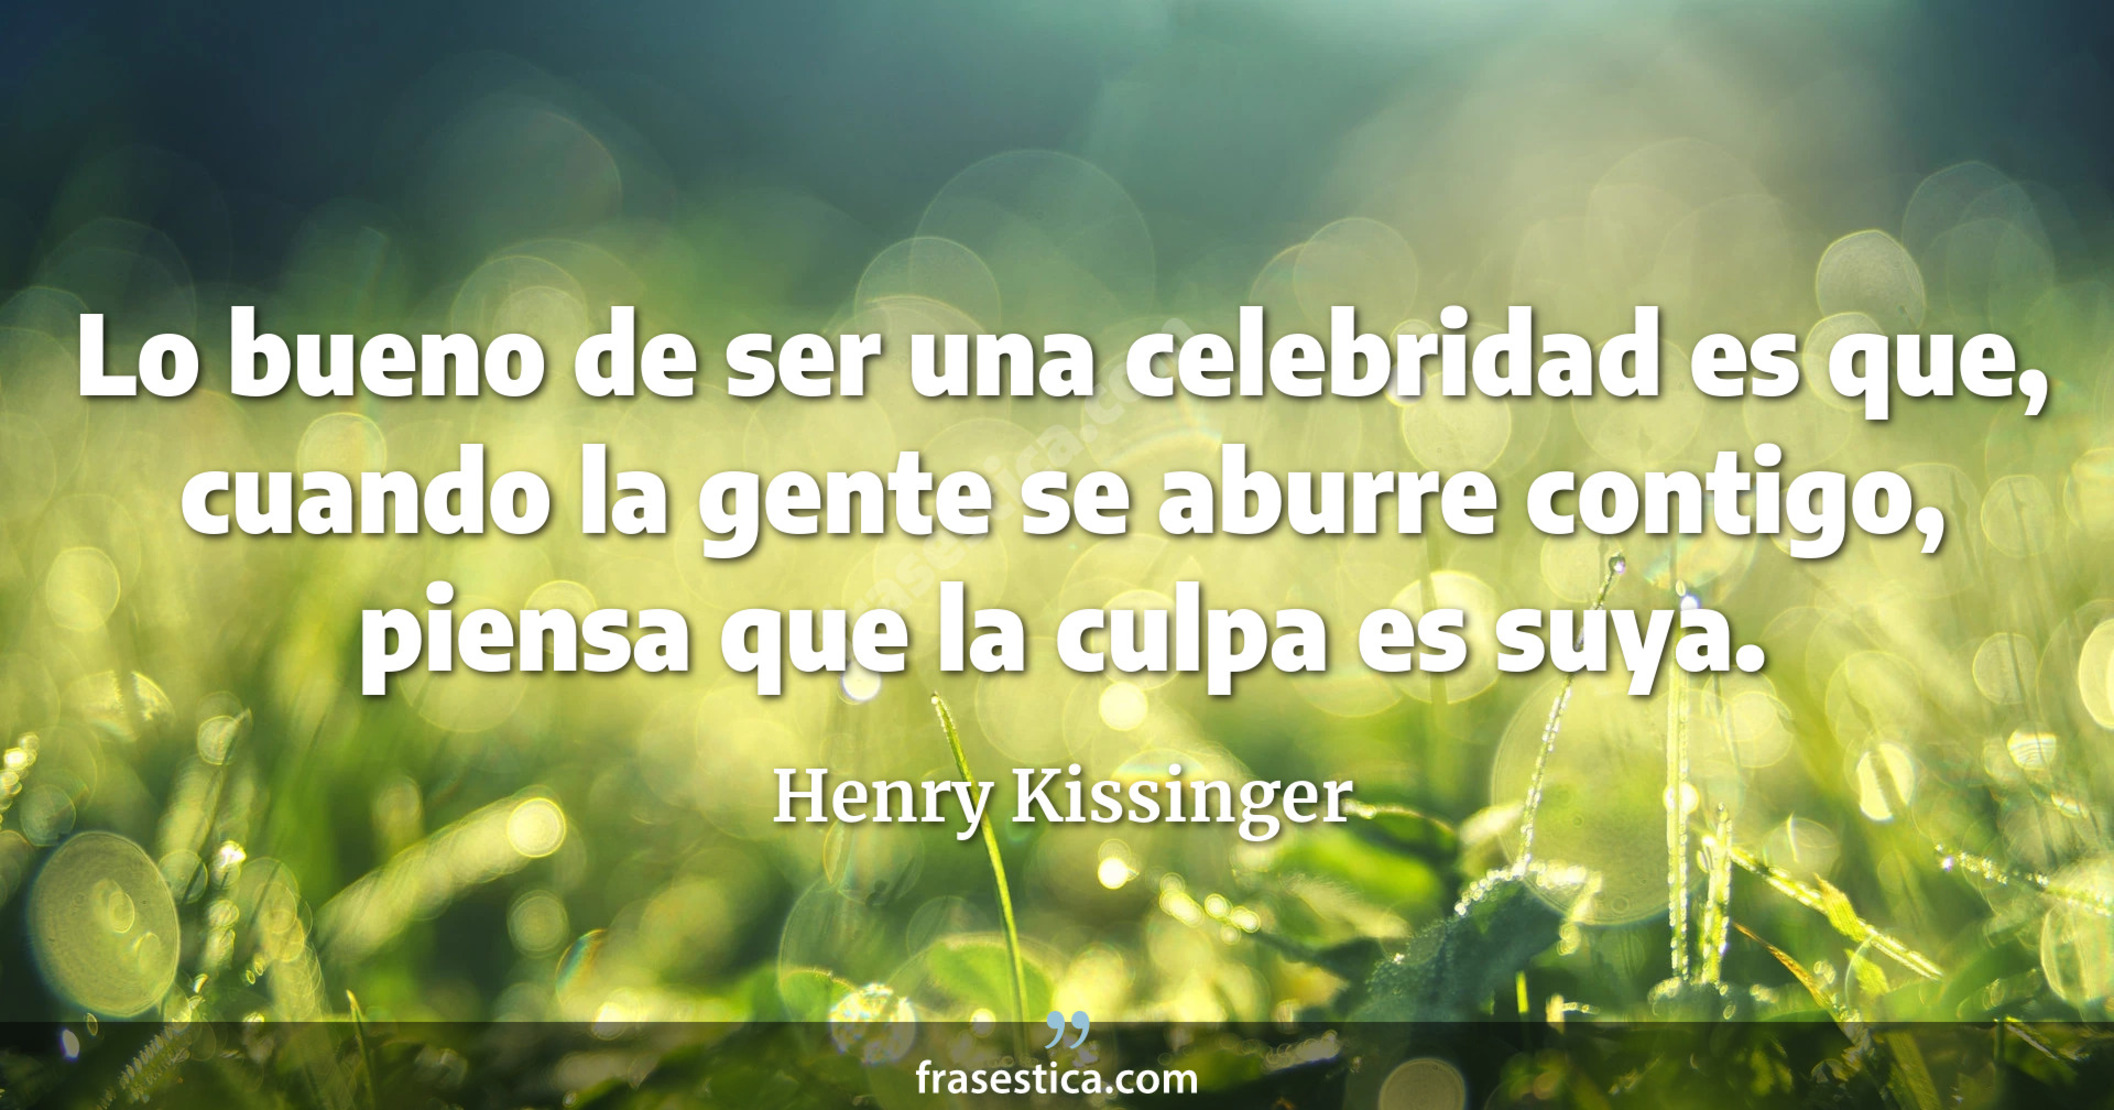 Lo bueno de ser una celebridad es que, cuando la gente se aburre contigo, piensa que la culpa es suya. - Henry Kissinger